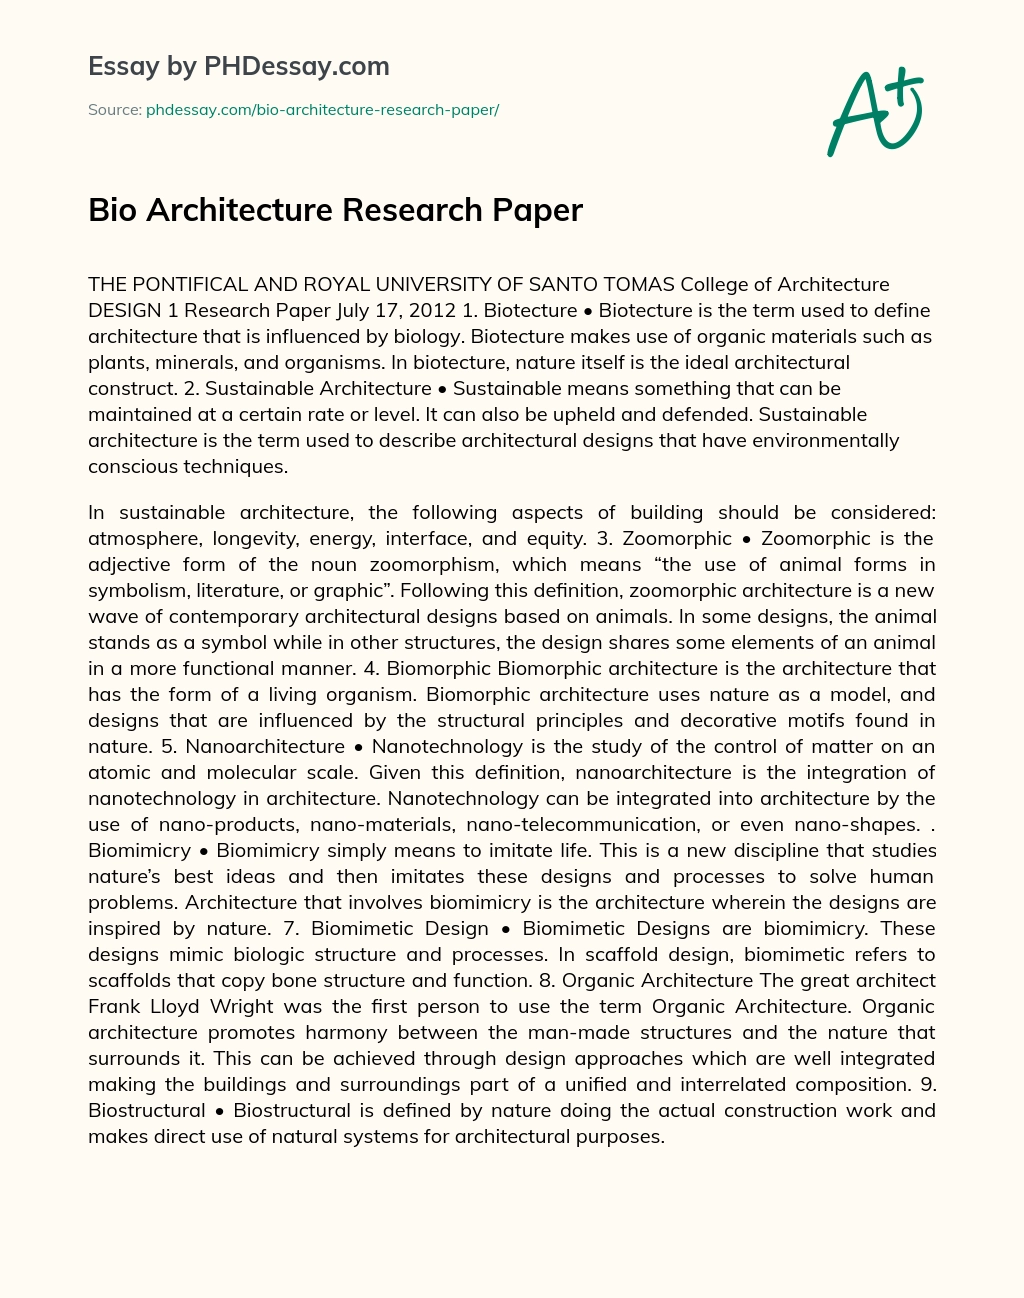 Bio Architecture Research Paper essay